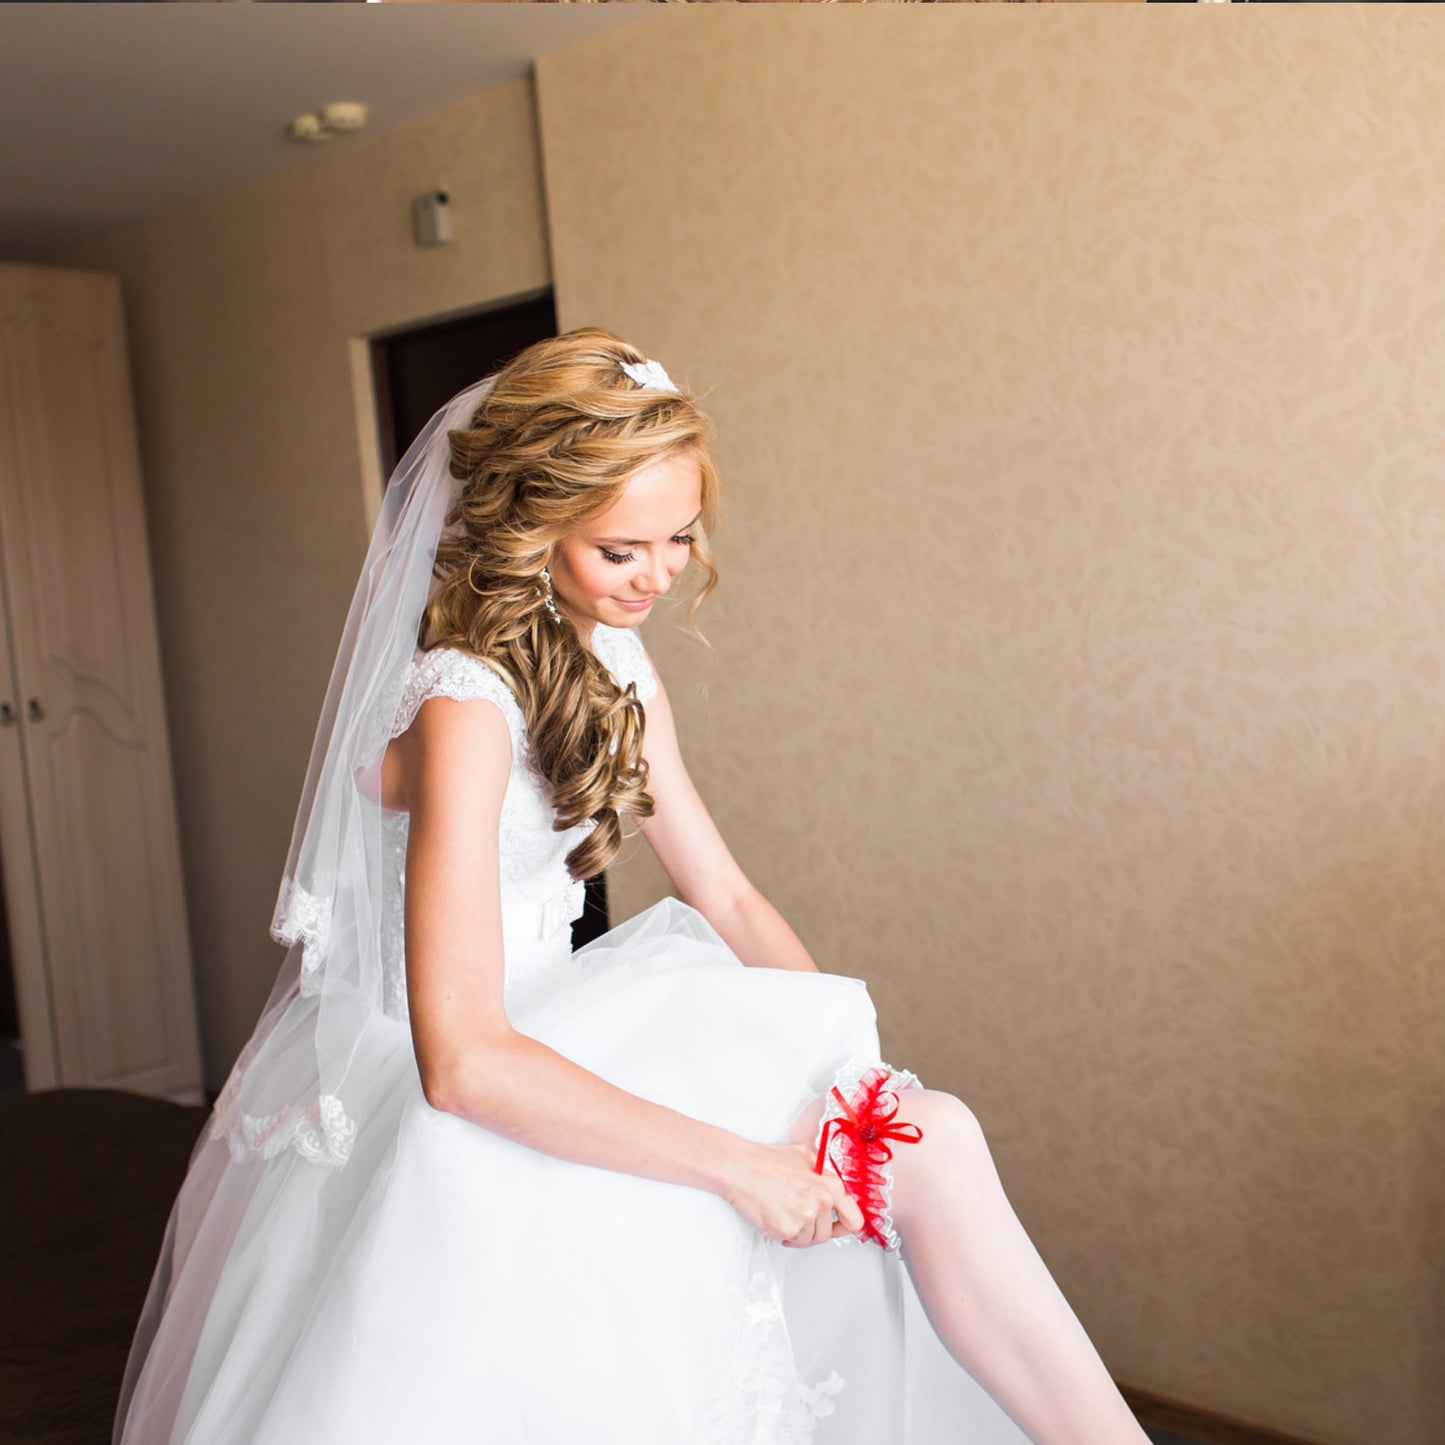 Woman wearing a wedding garter under her wedding dress